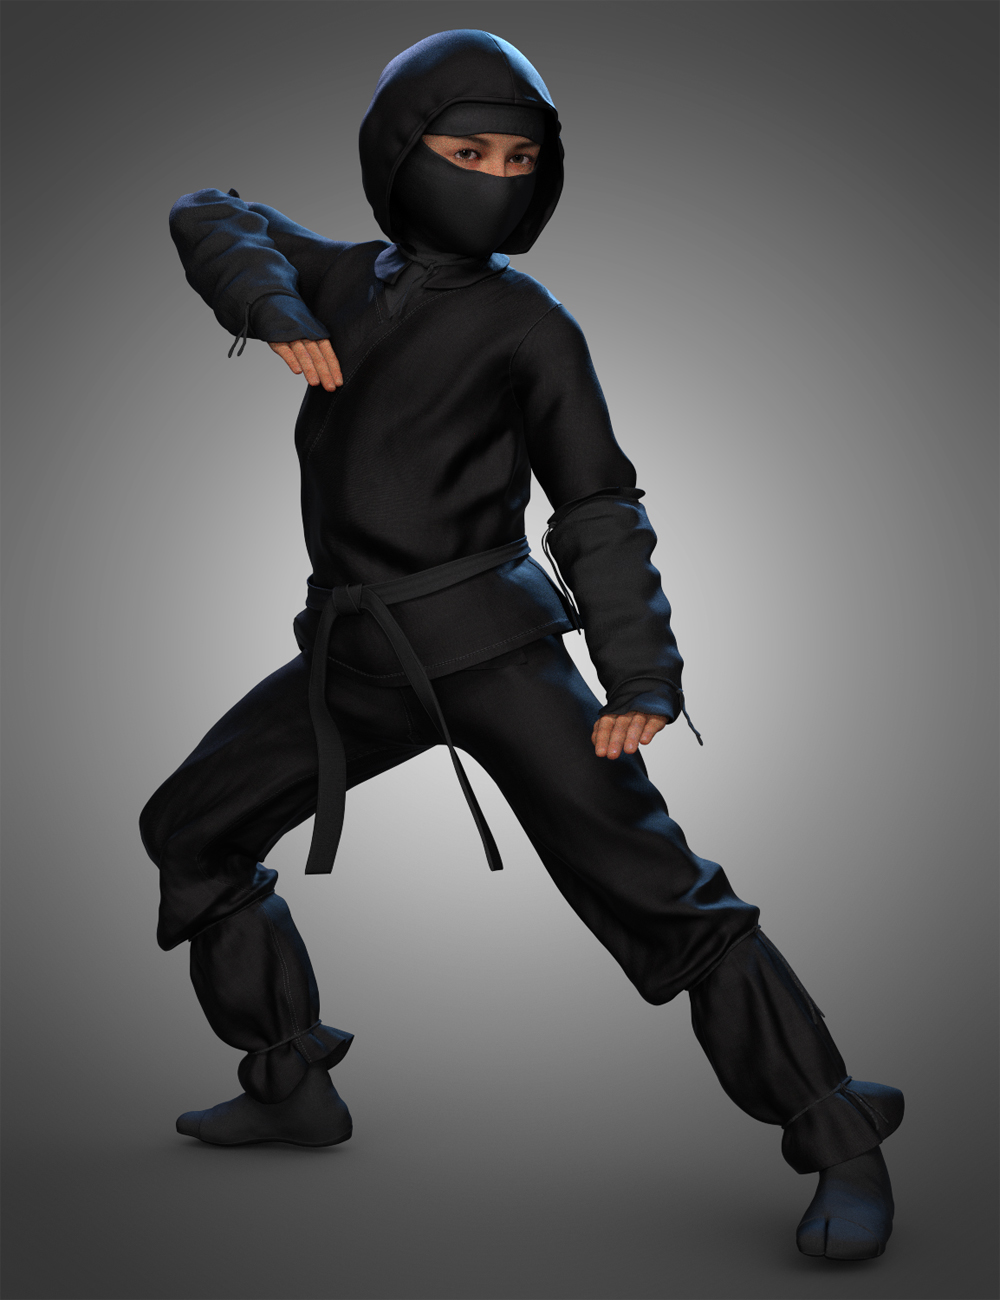 Ninja Kid Outfit for Genesis 8.1 Males